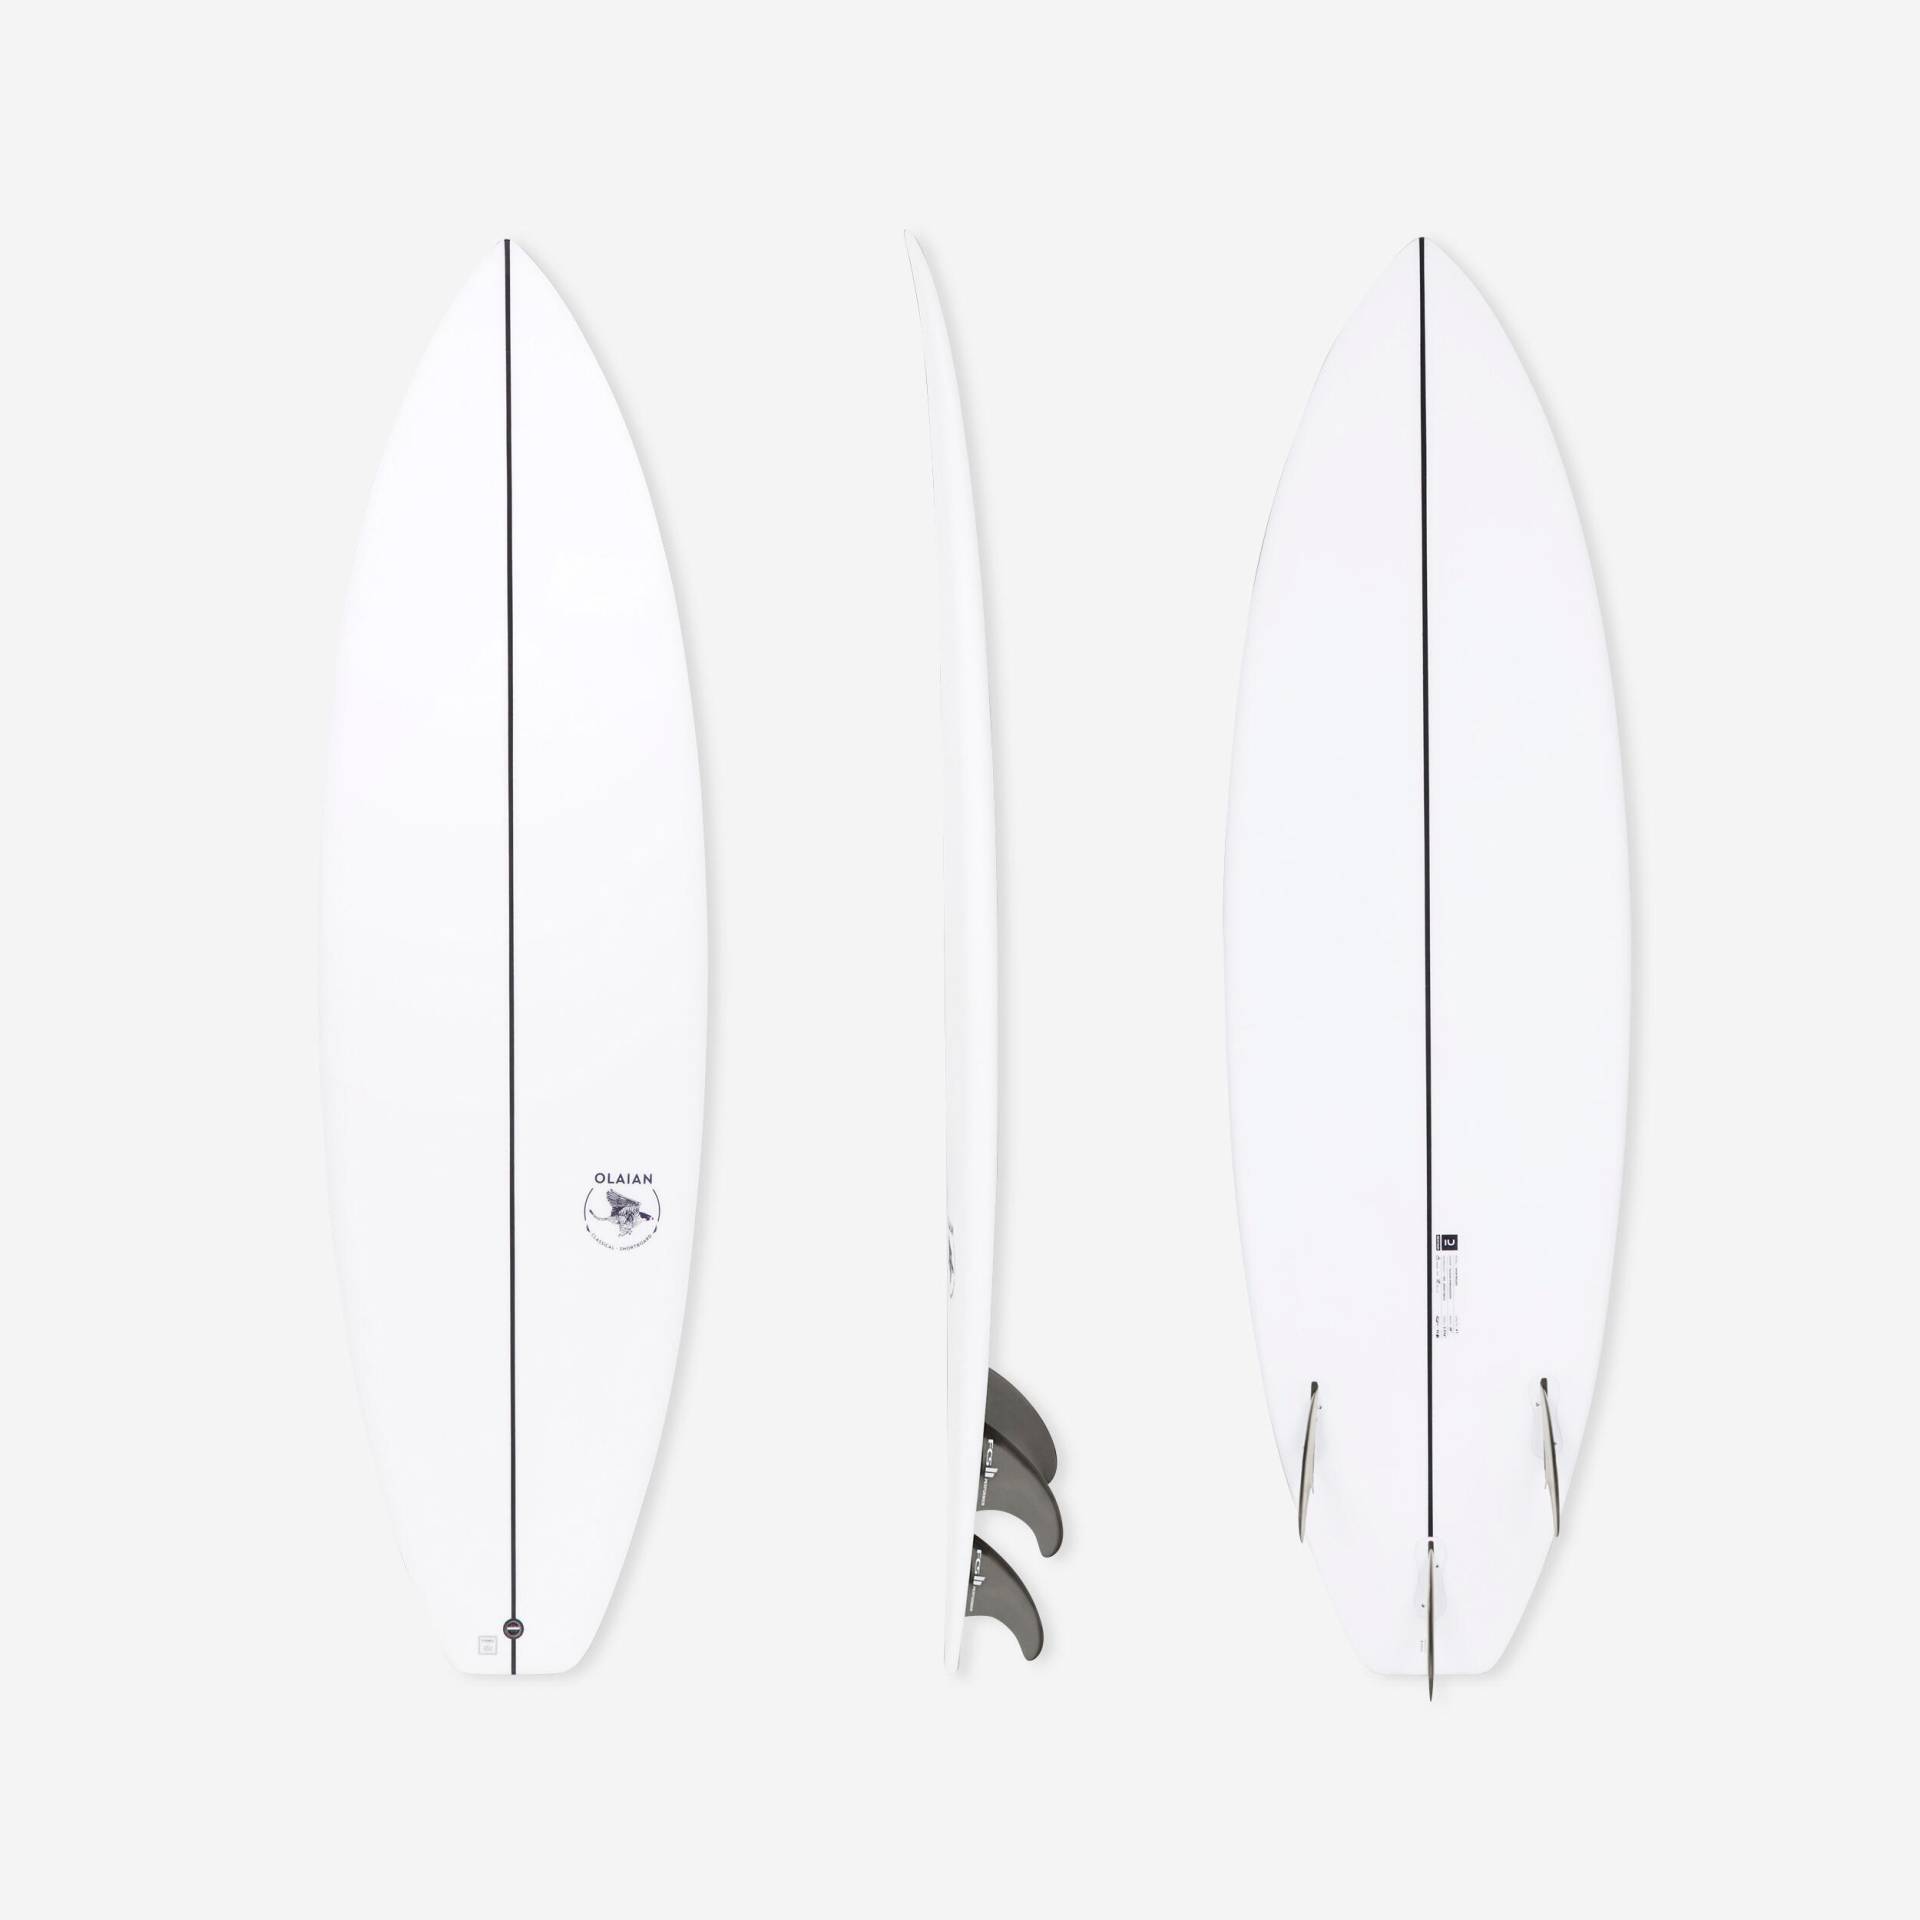 Surfboard Shortboard 900 6'1" 33 L inkl. 3 FCS2-Finnen von OLAIAN